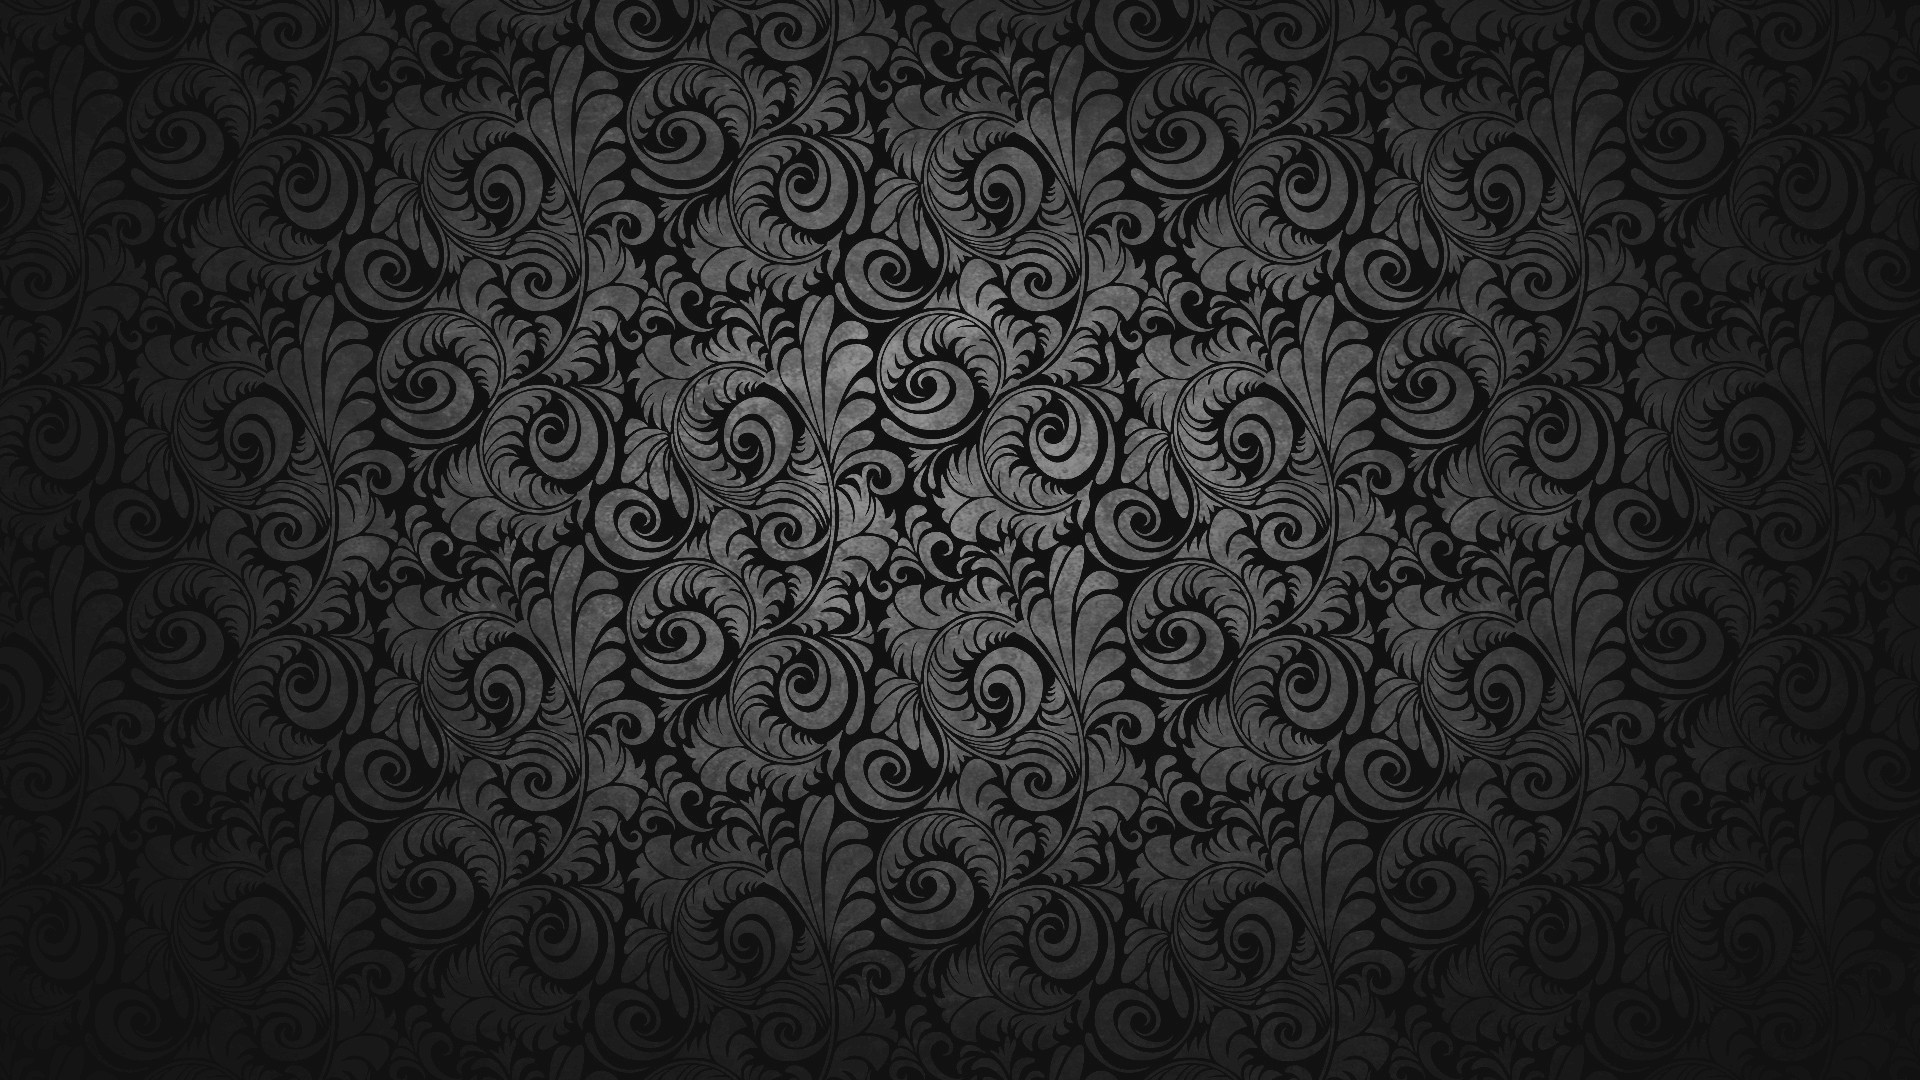 Wallpaper Full HD Abstract Dark Alojamiento De Im Genes